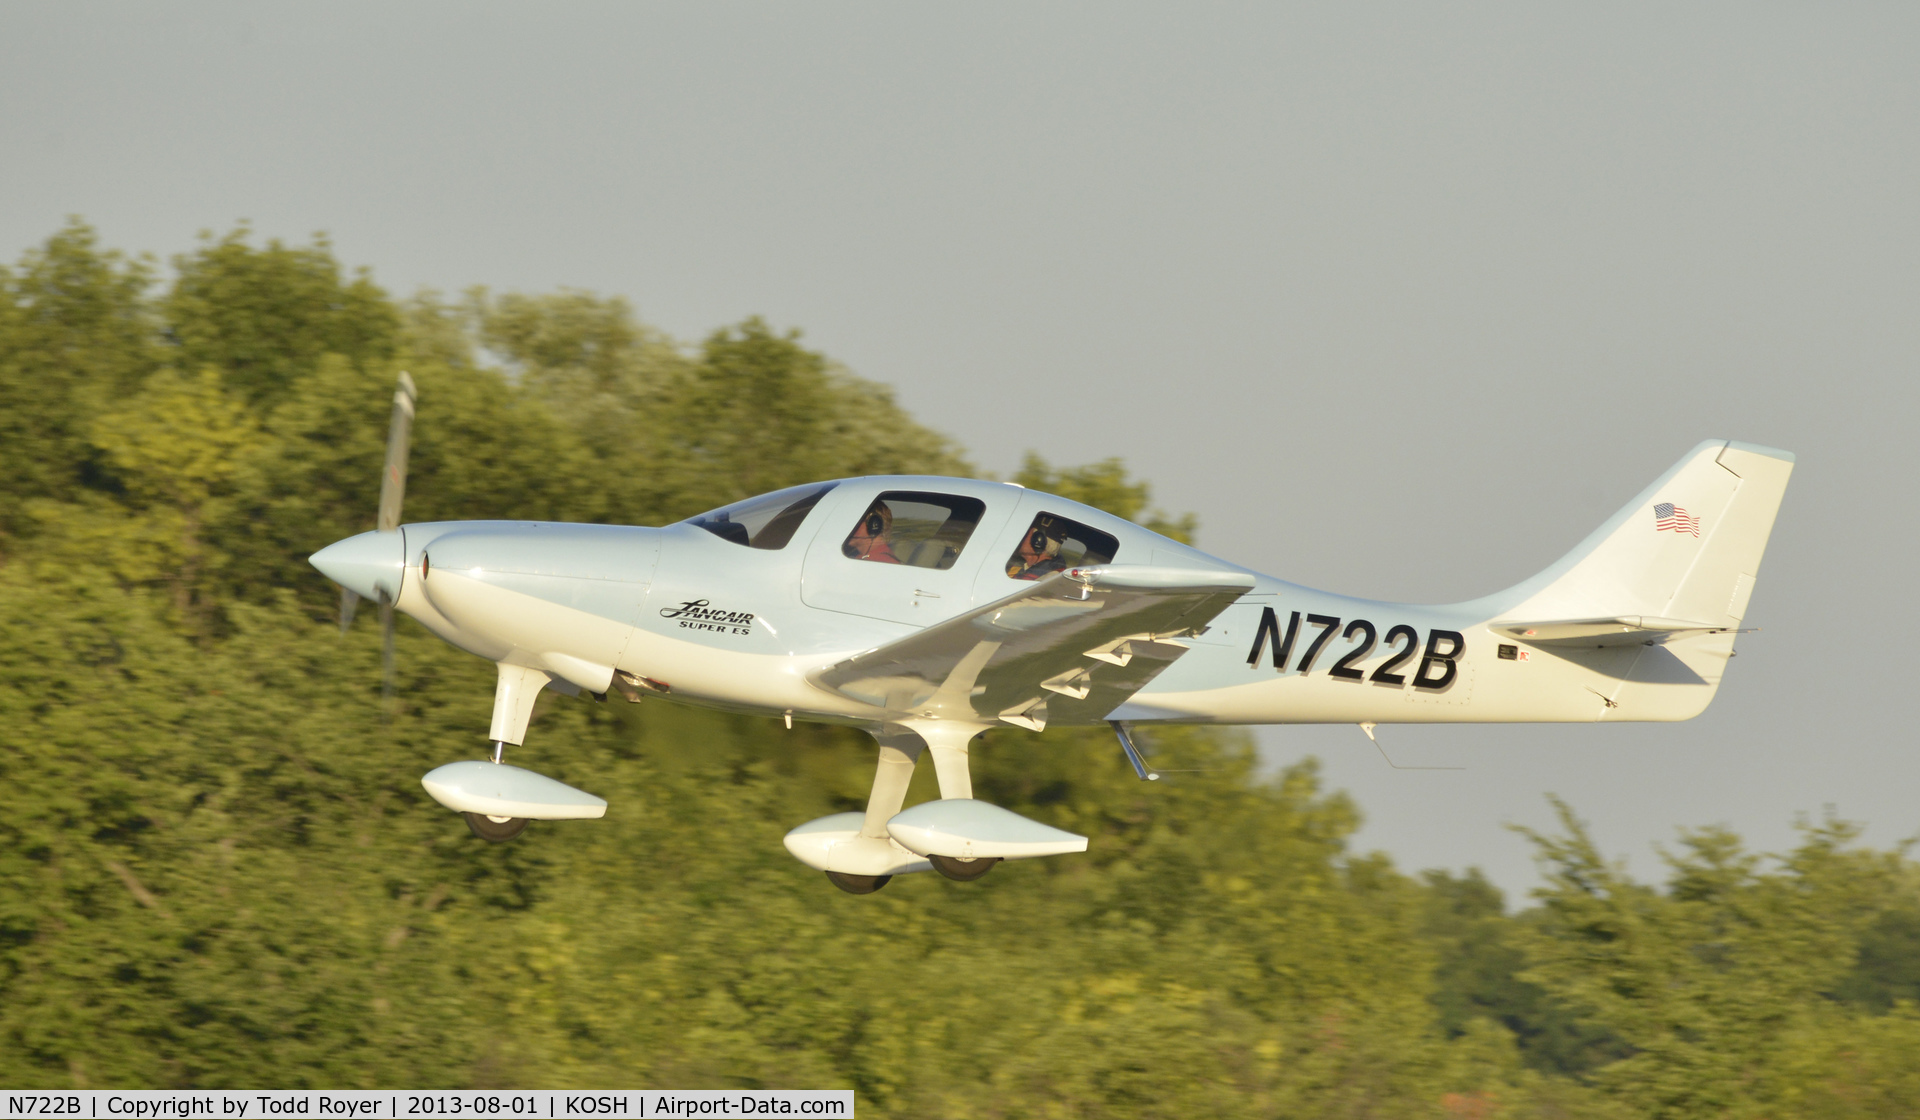 N722B, 2005 Lancair ES C/N ES-128, Airventure 2013